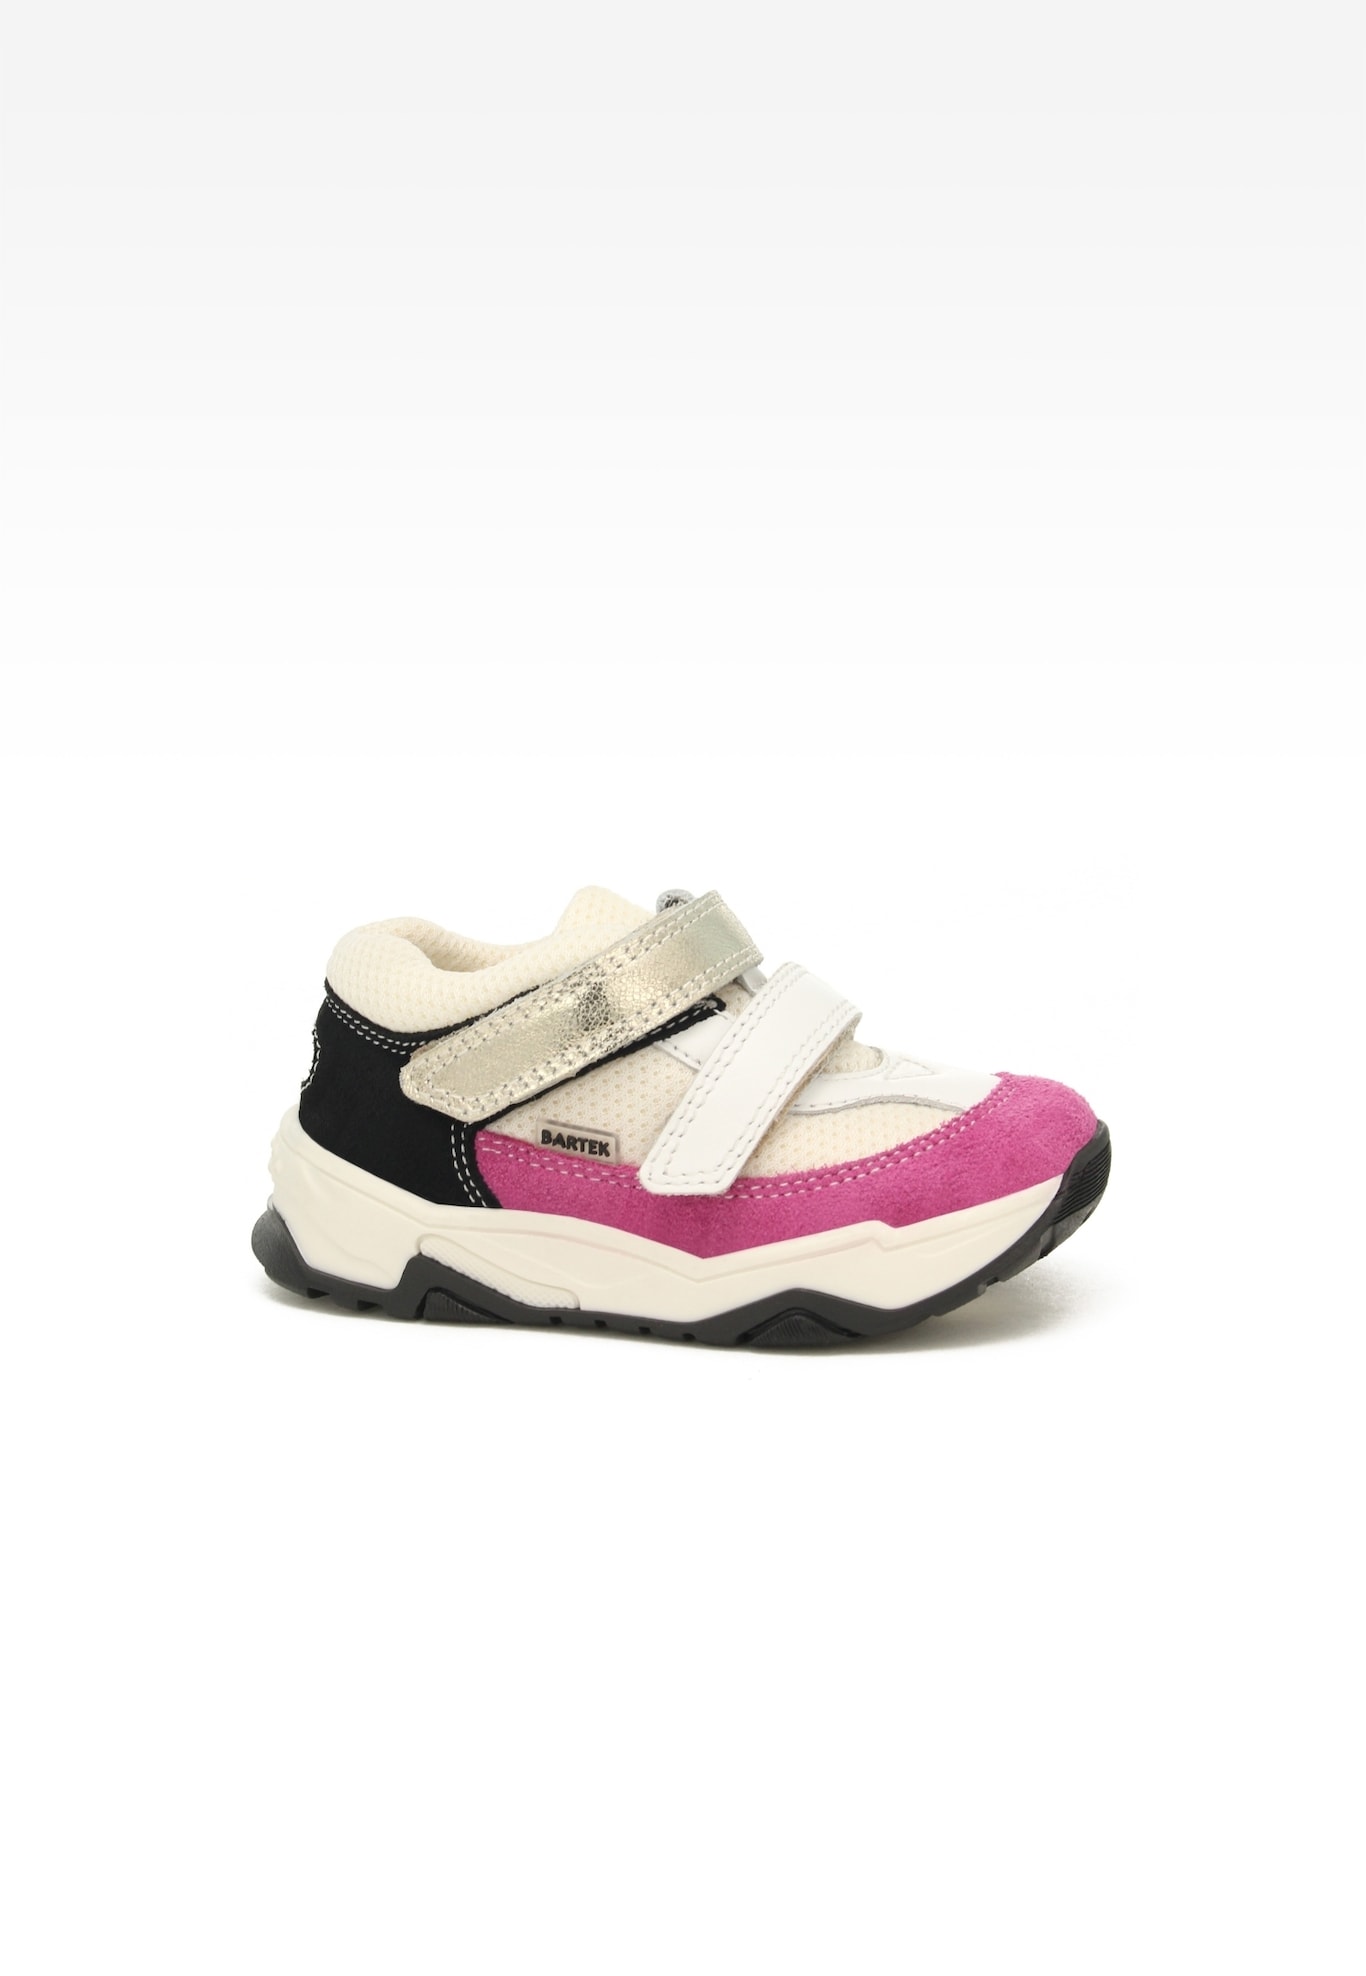 Sneakers BARTEK 11131025, dla dziewcząt, biało-różowy